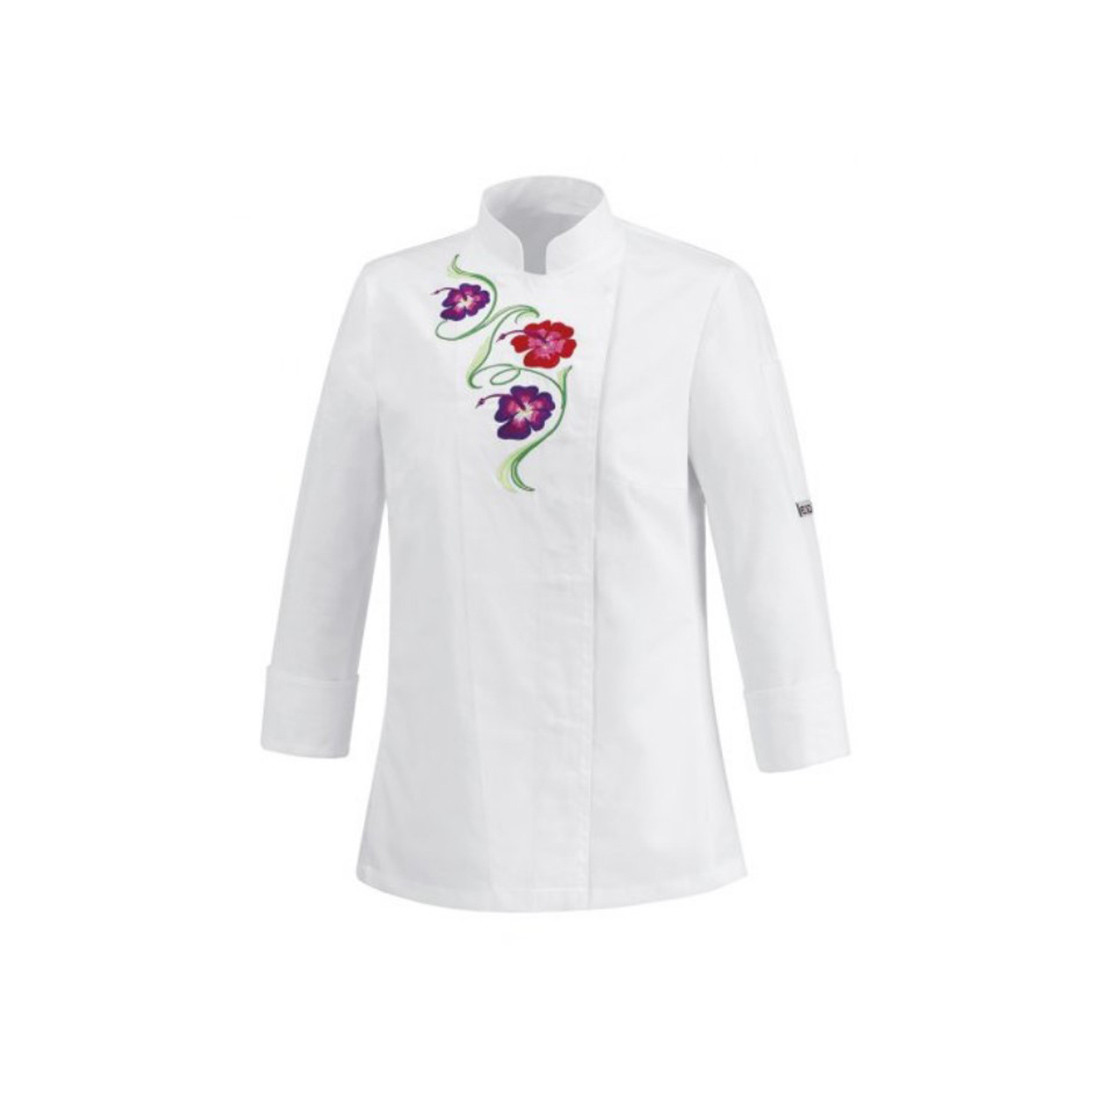 Veste chef pour femme Flowers, 100 % coton - Les vêtements de protection